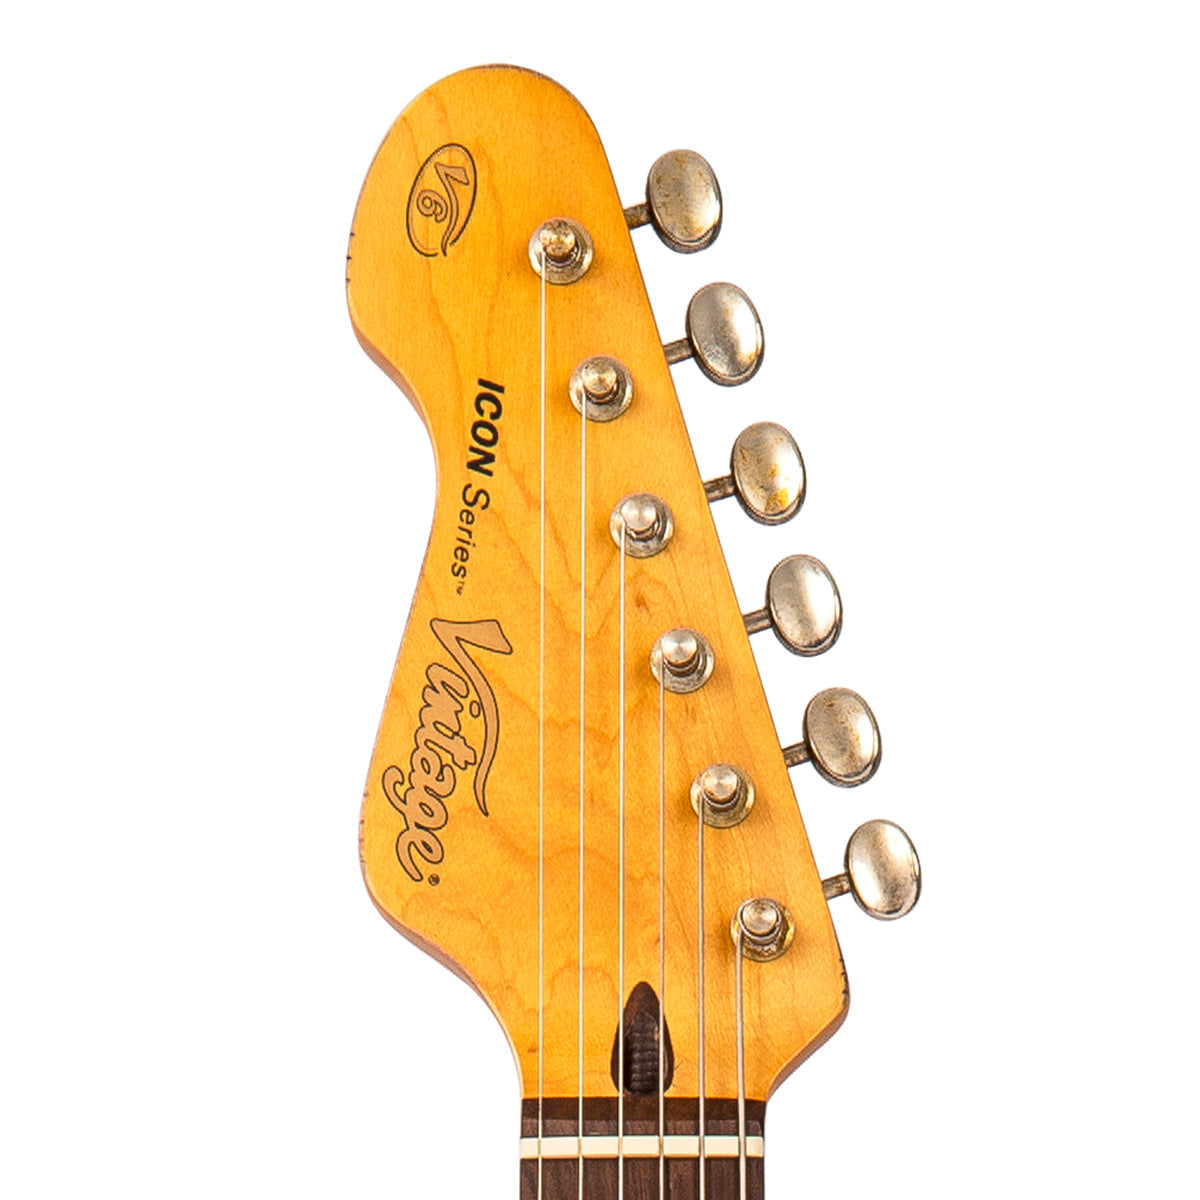 Vintage V6H ICON HSS Electric Guitar ~ Left Hand Distressed Sunburst, Left Hand Electric Guitars for sale at Richards Guitars.